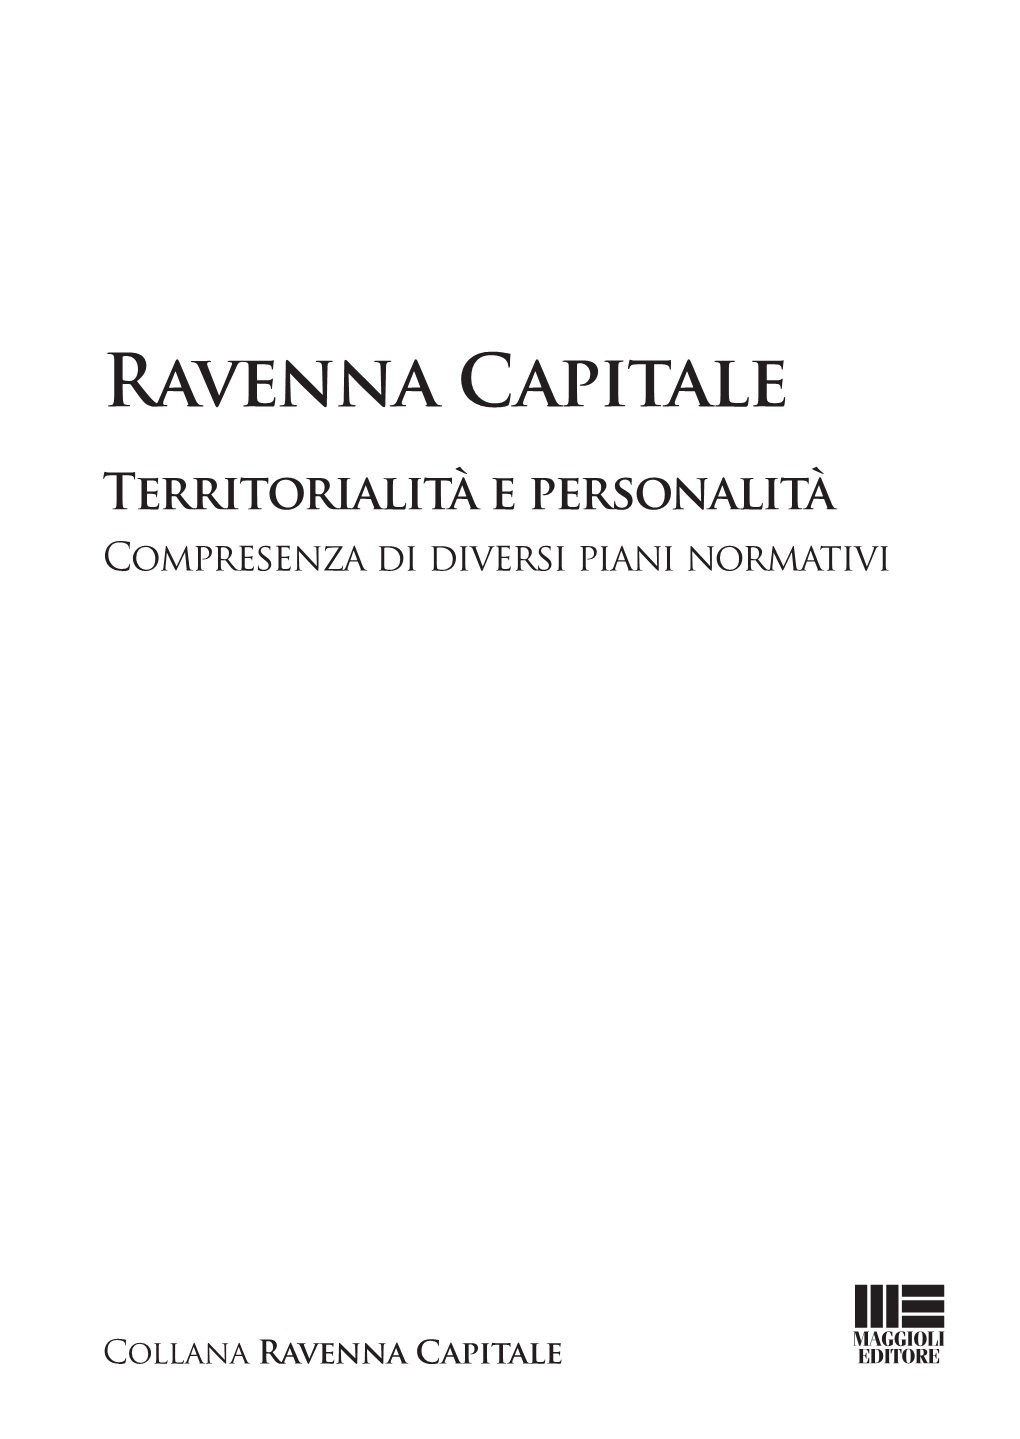 Associazione Ravenna Capitale